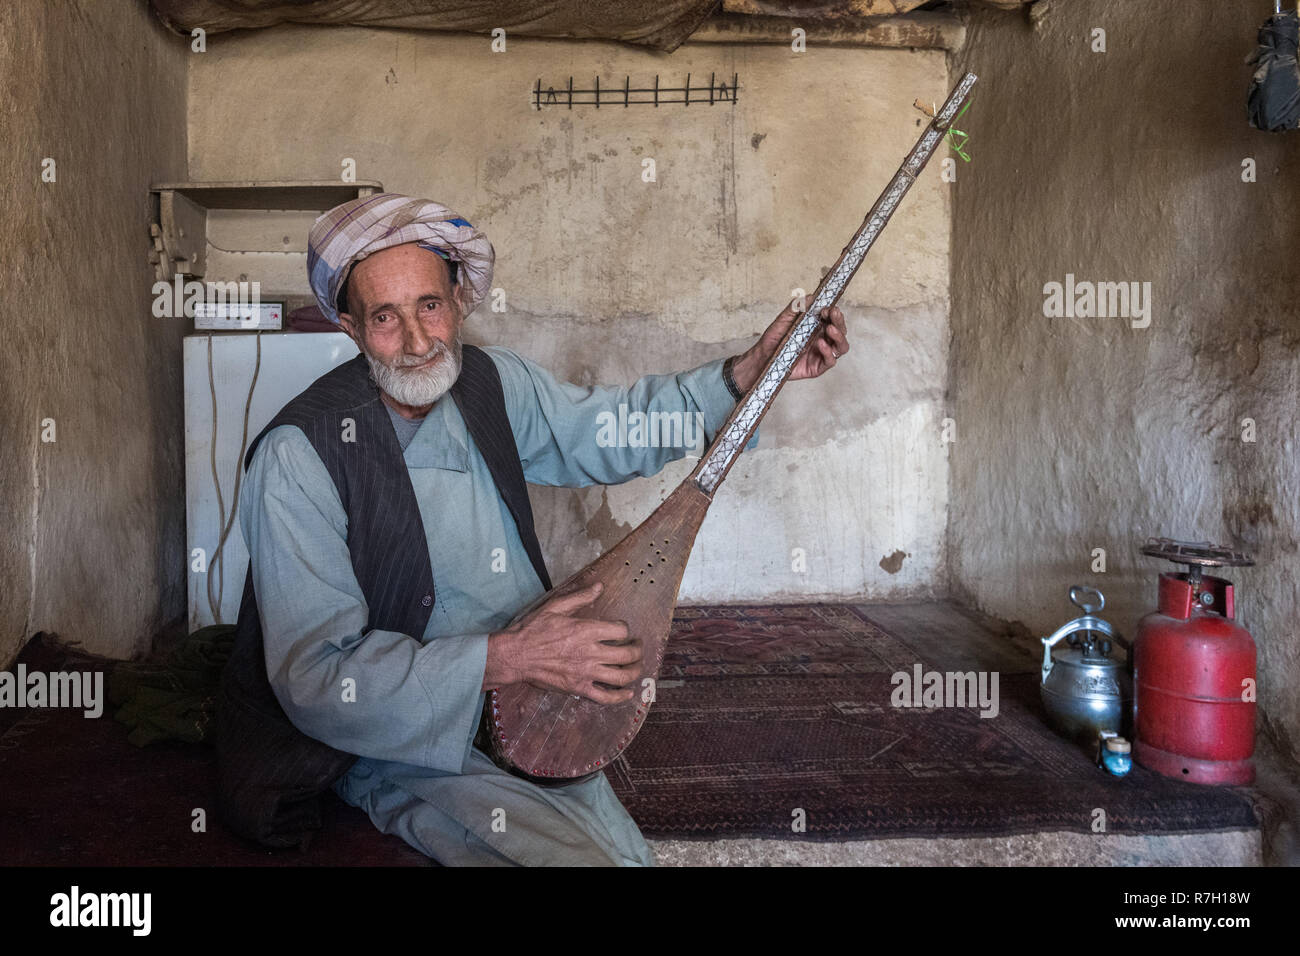 Vieil homme jouant rabab, l'instrument de musique nationaux afghans, dans une ancienne maison de thé vieux bazar, Herat, province de Herat, Afghanistan Banque D'Images